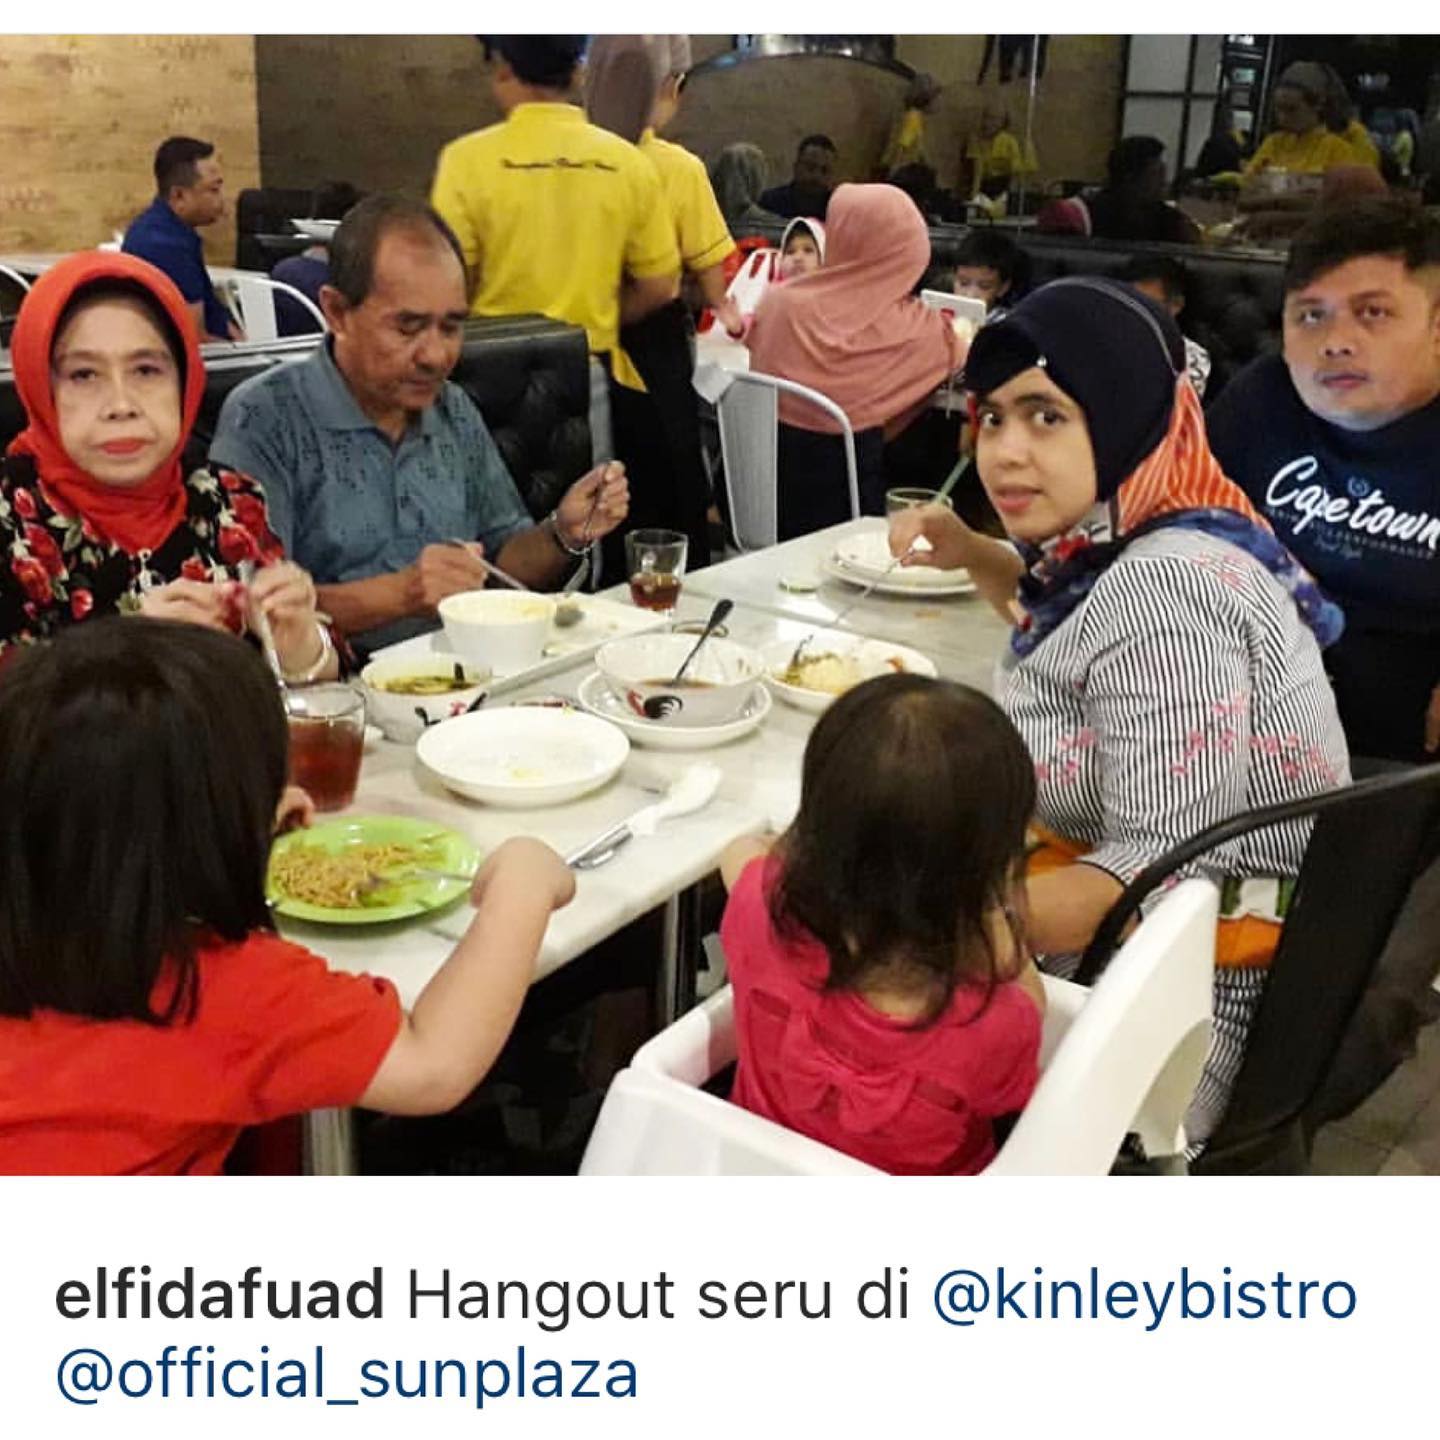 Hangout seru pastinya di Kinley Thai Bistro
Apalagi dengan keluarga 
Terima kasih @elfidafuad
Read more